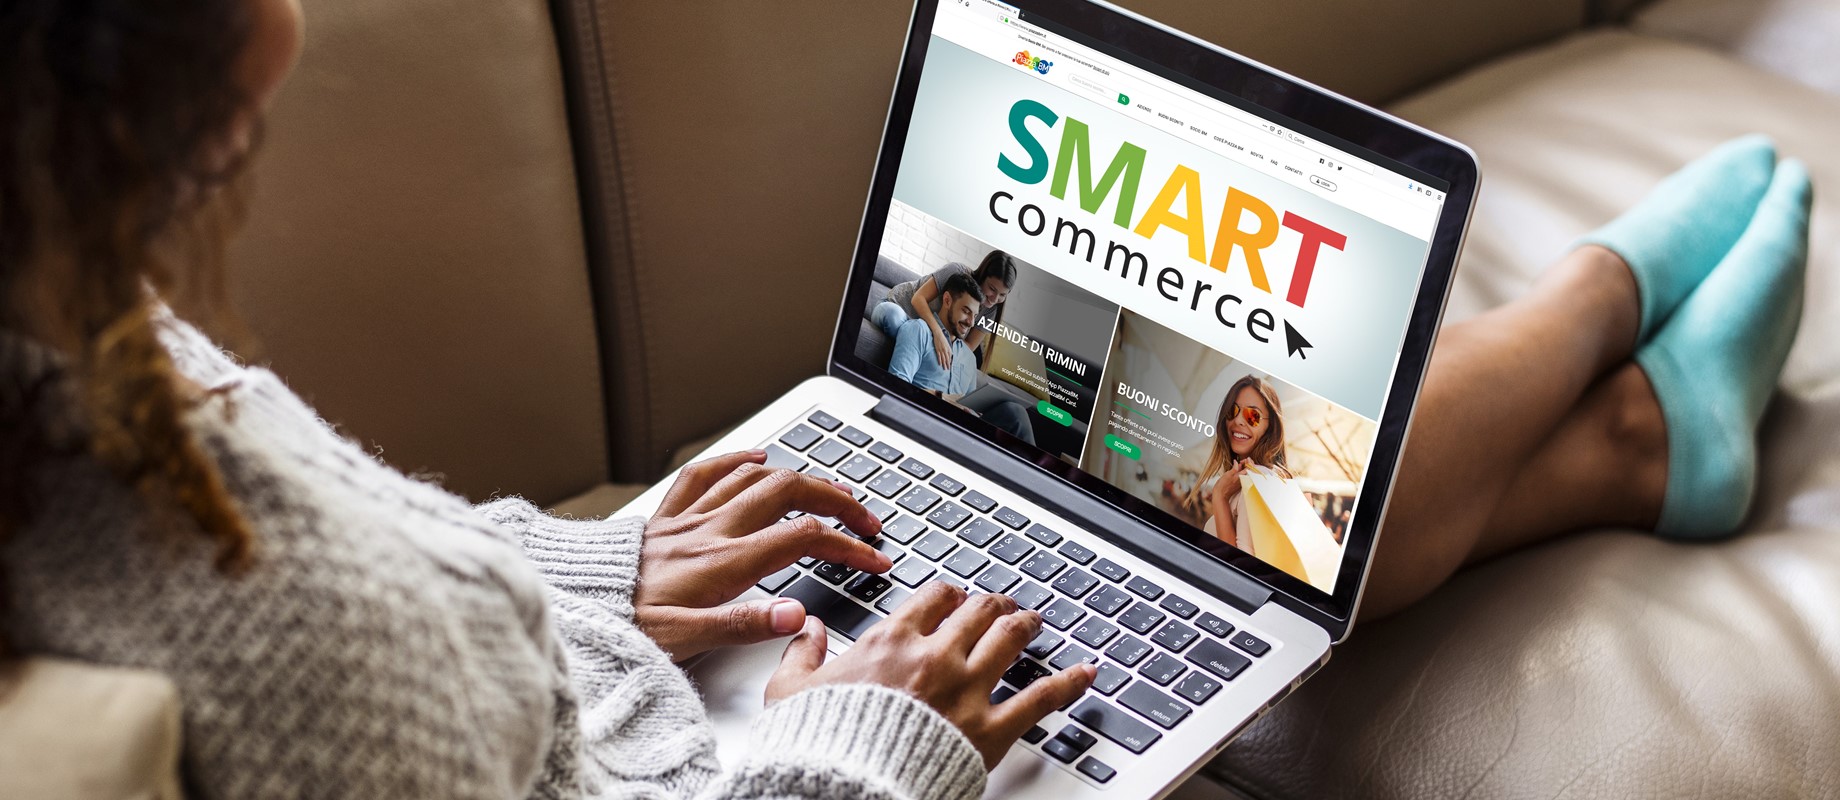 SmartCommerce PiazzaBM - il nuovo servizio per Consegne a domicilio e take away 